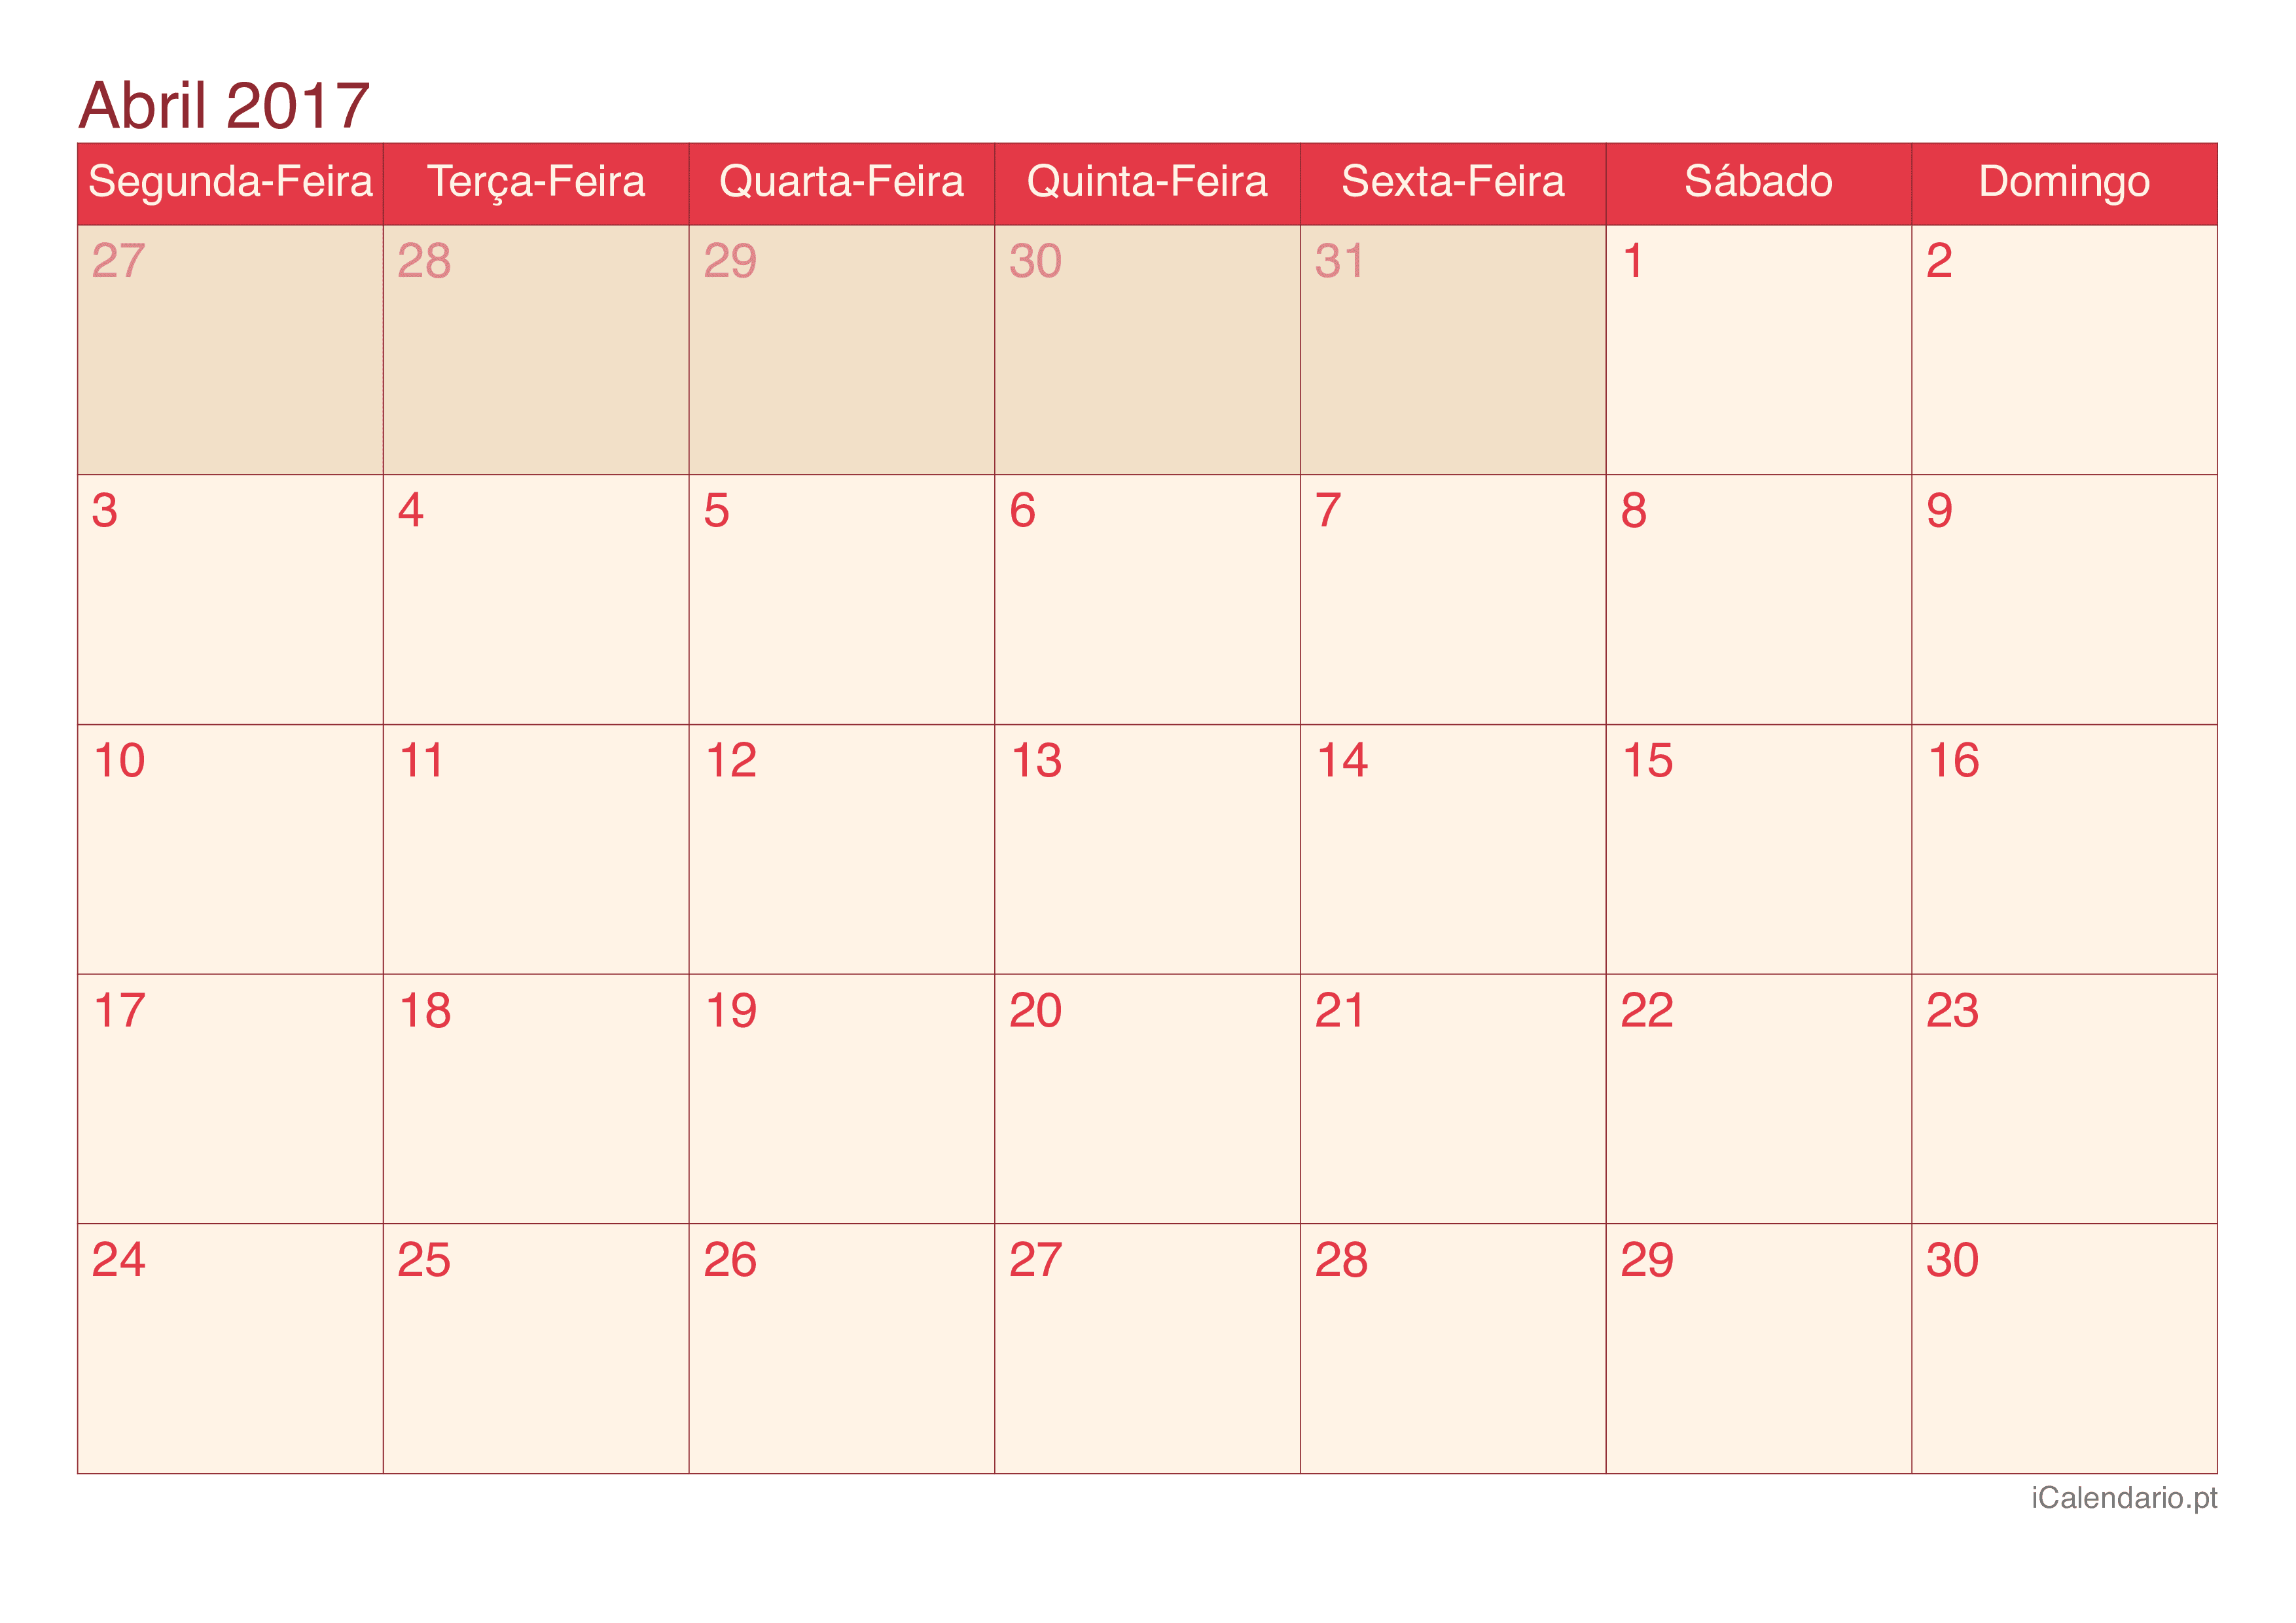 Calendário de abril 2017 - Cherry